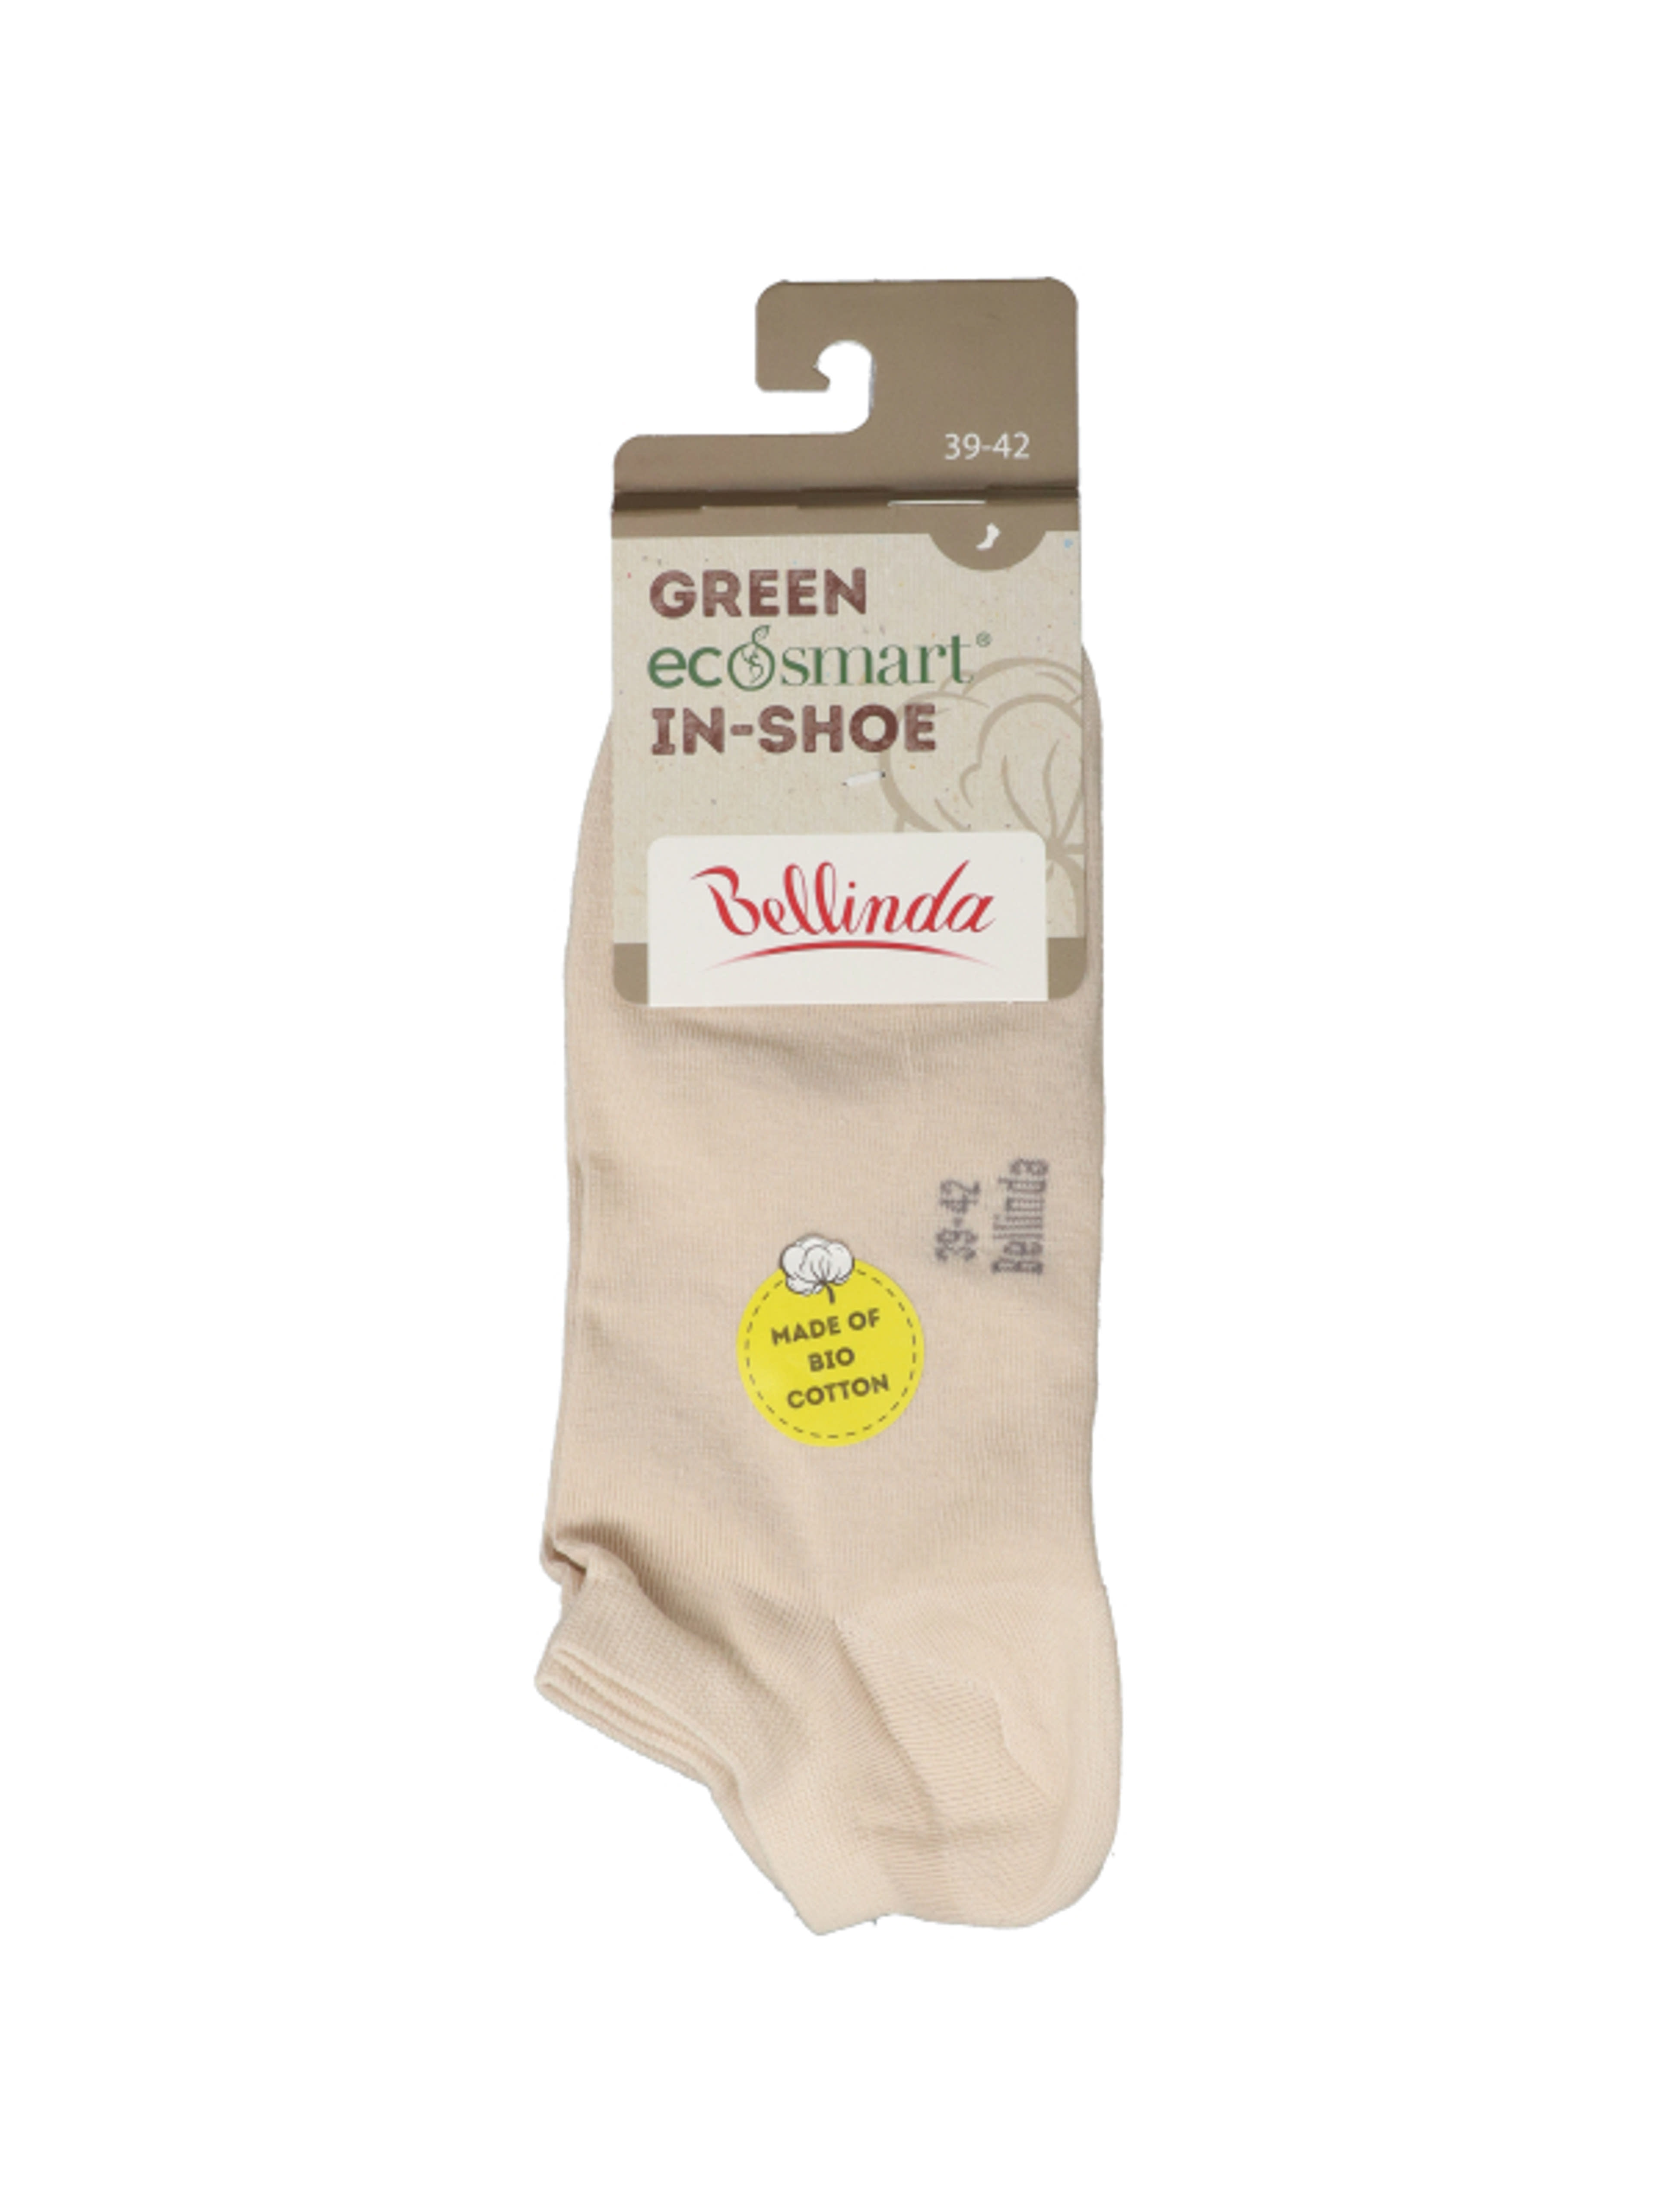 Bellinda Green Ecosmart In-Shoe női zokni, bézs, 39-42 - 1 pár